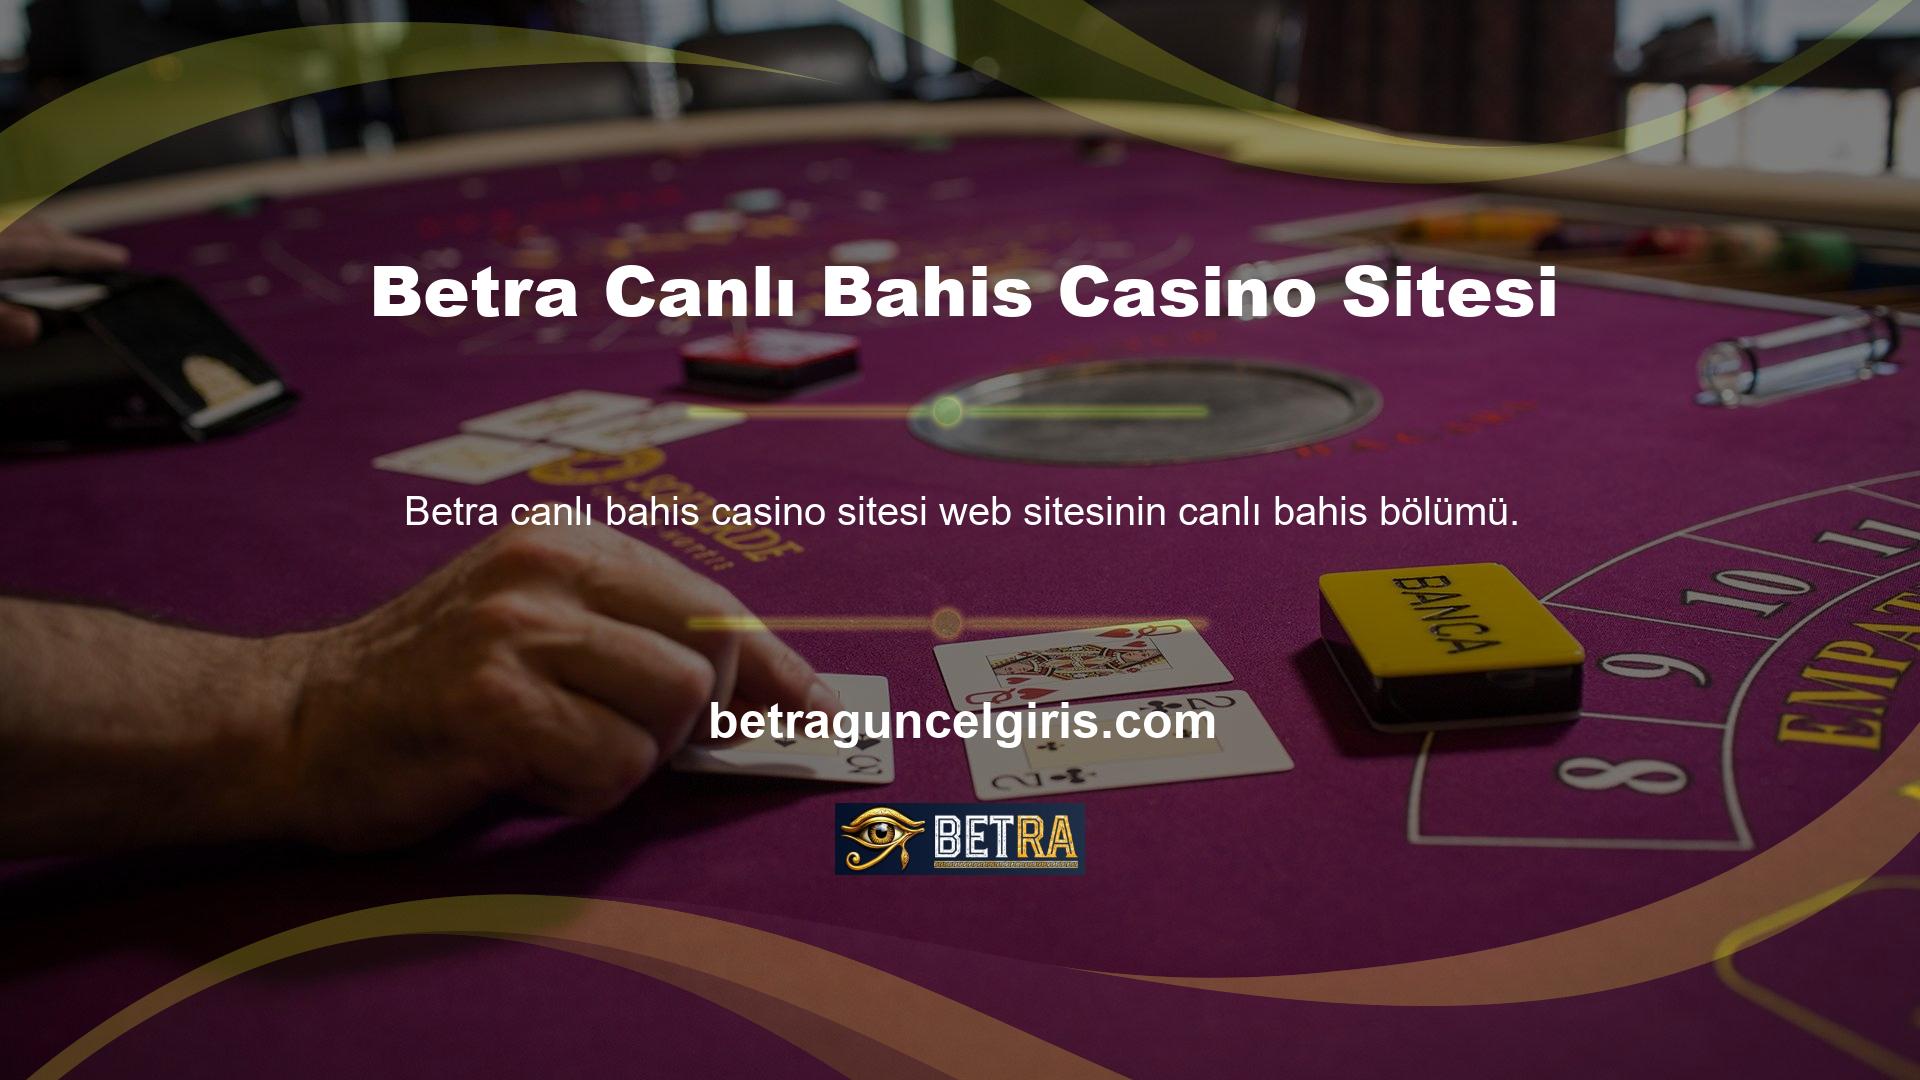 Betra canlı bahis casino sitesinde farklı bahis yöntemleri arasında seçim yapmak, daha baskın takımı belirlemenize yardımcı olabilir